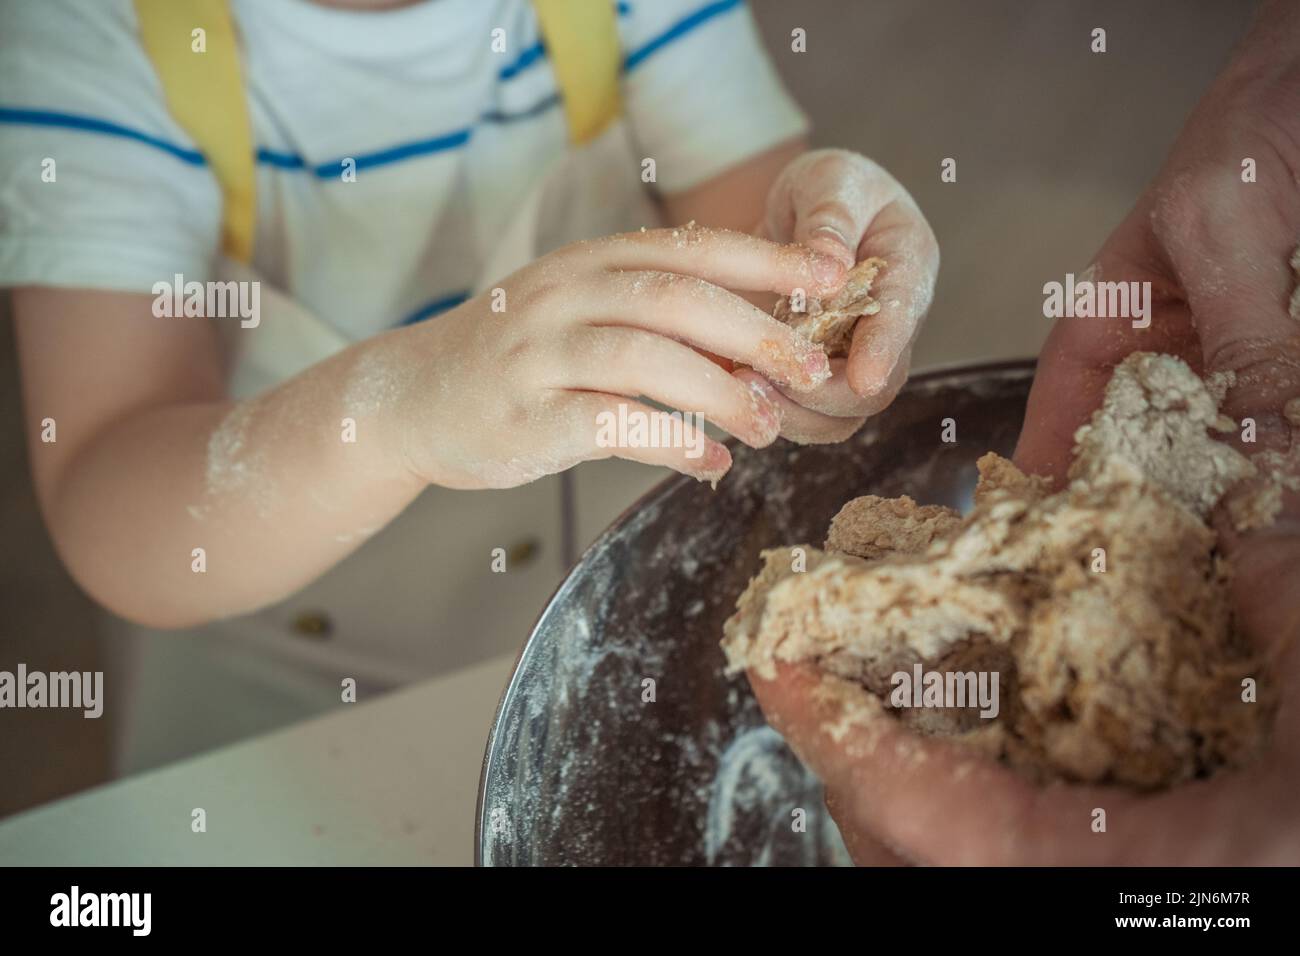 Les mains d'un enfant en culture font une pâte pour une tarte Banque D'Images